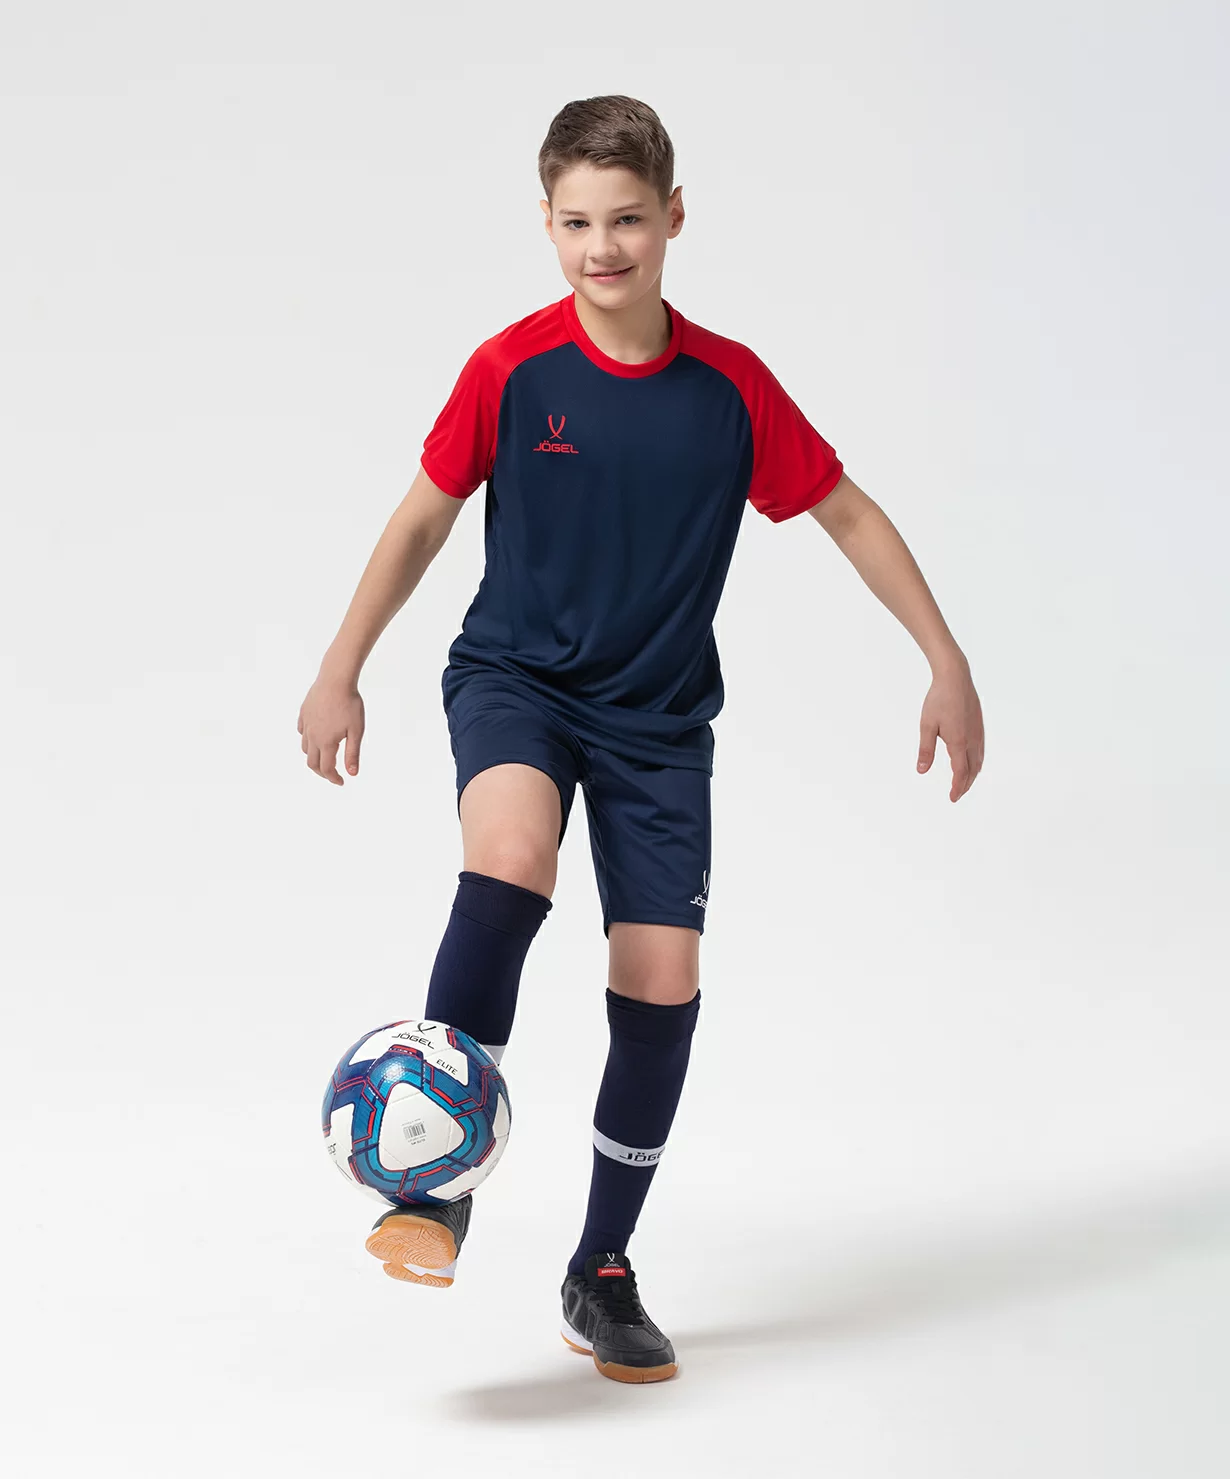 Фото Футболка игровая CAMP Reglan Jersey, темно-синий/красный, детский Jögel со склада магазина Спортев